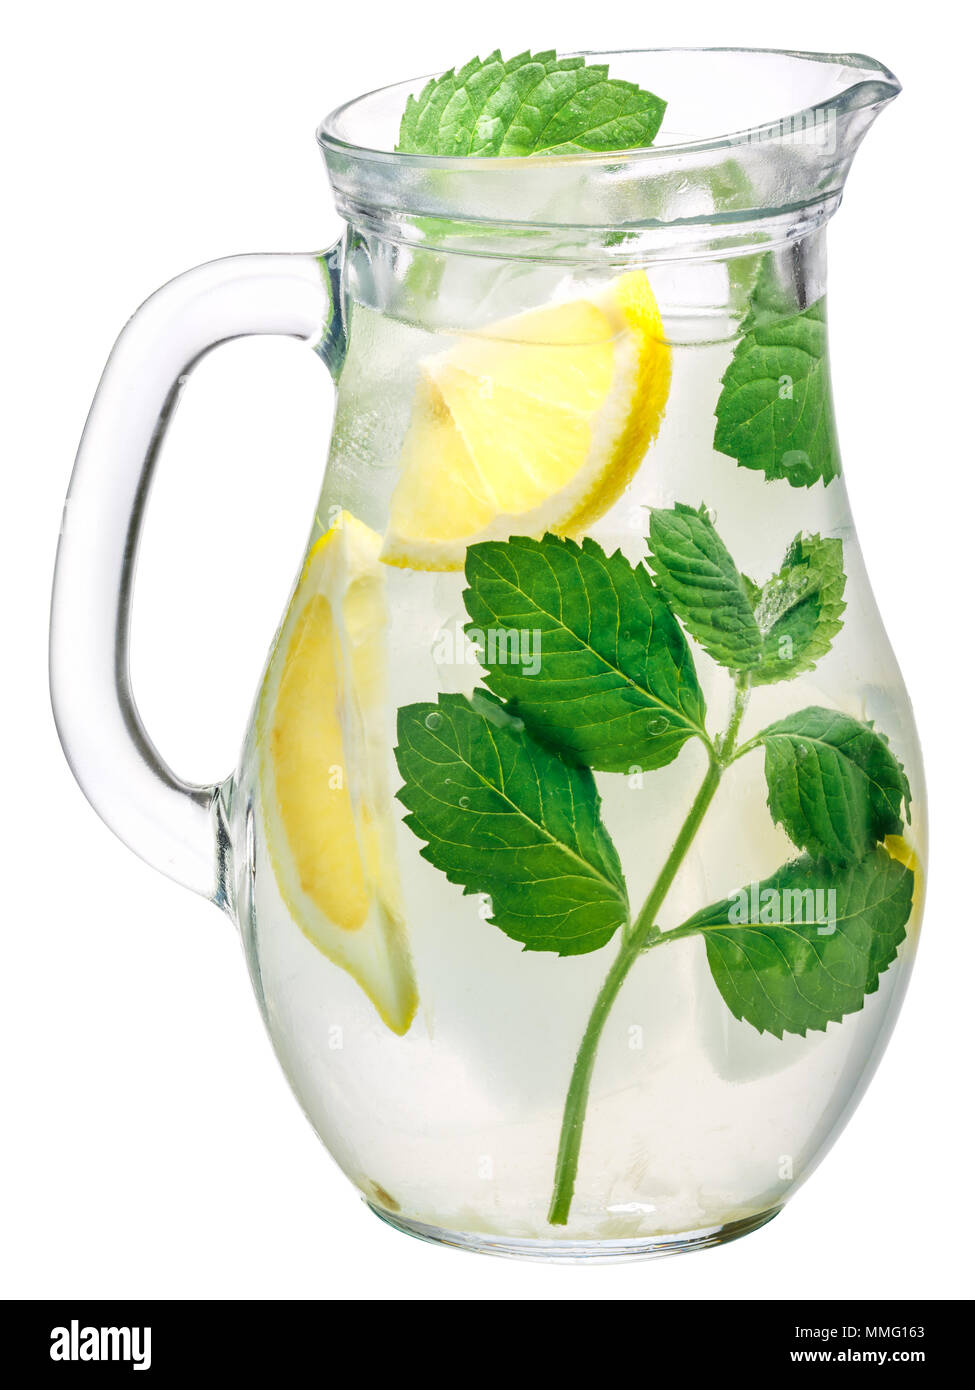 Verseuse de wint avec de l'eau ou de la limonade citron detox Banque D'Images